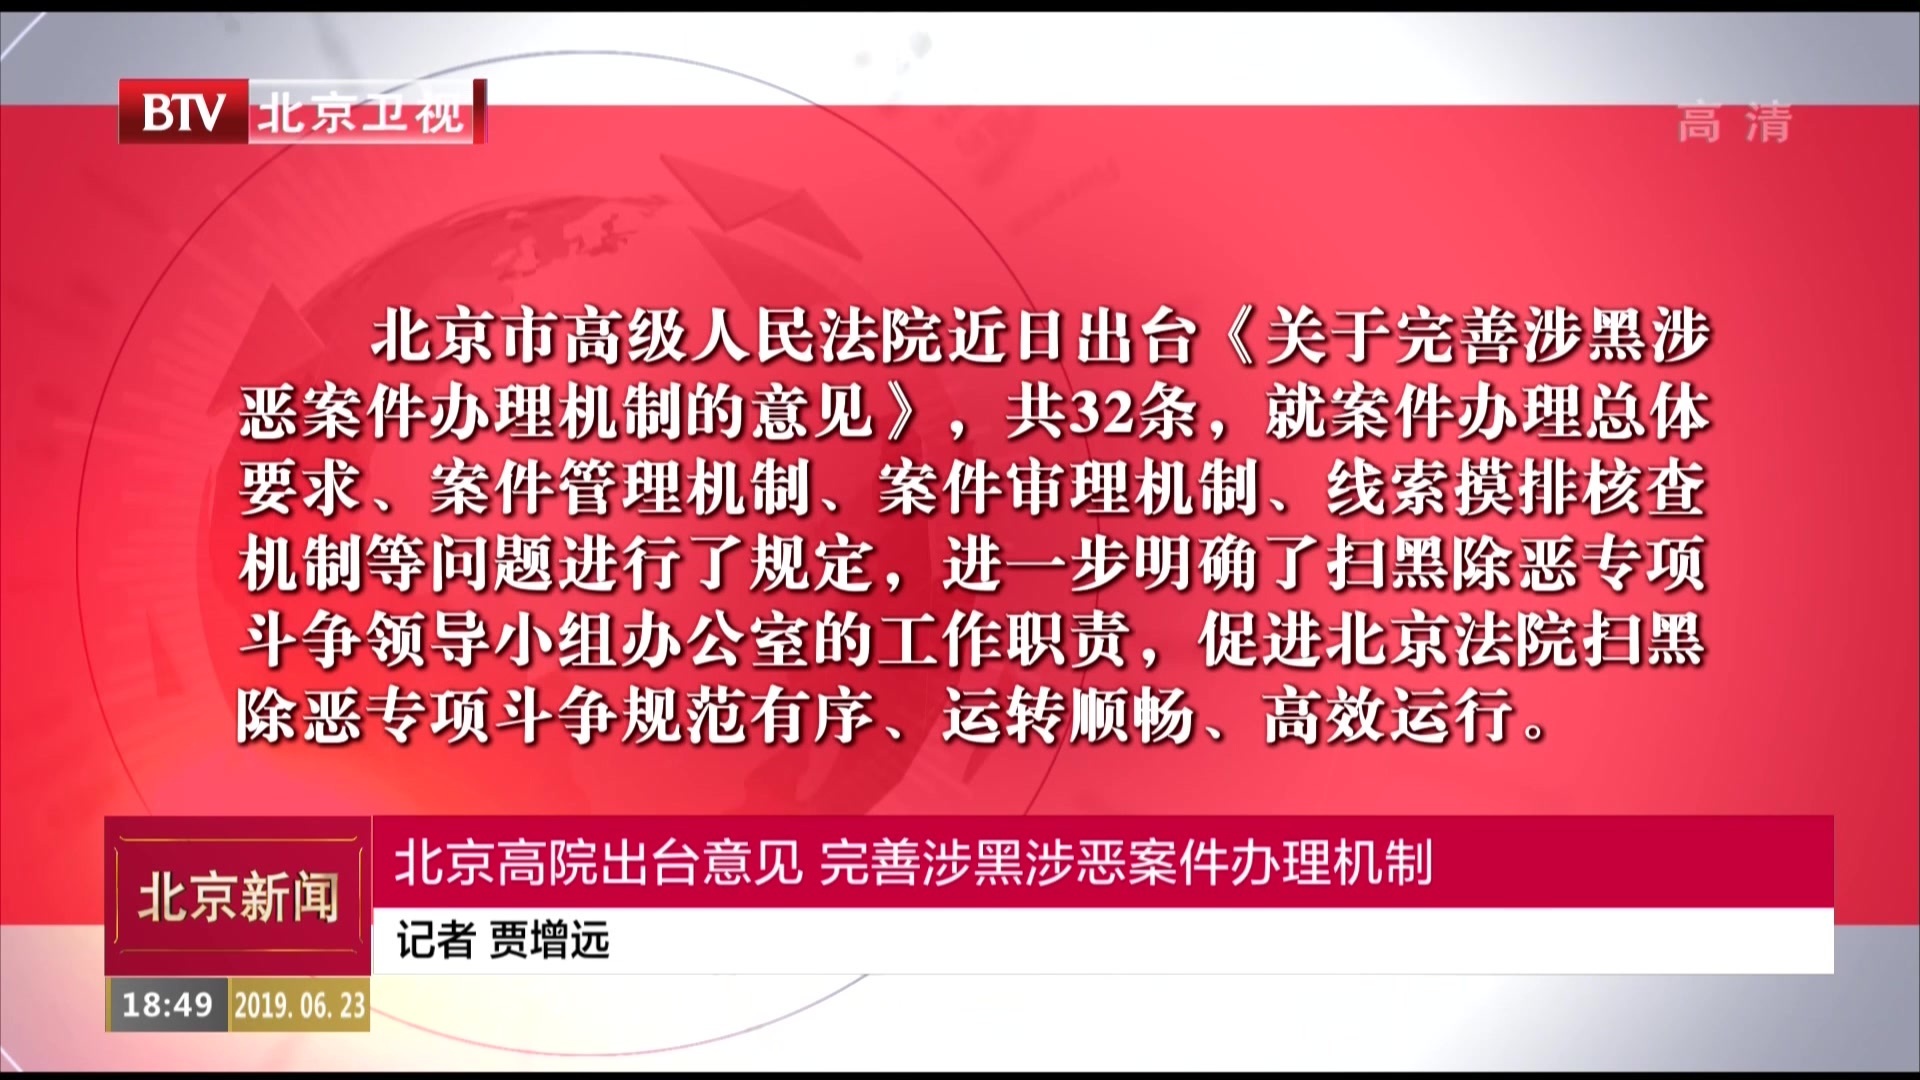 北京高院出台意见  完善涉黑涉恶案件办理机制